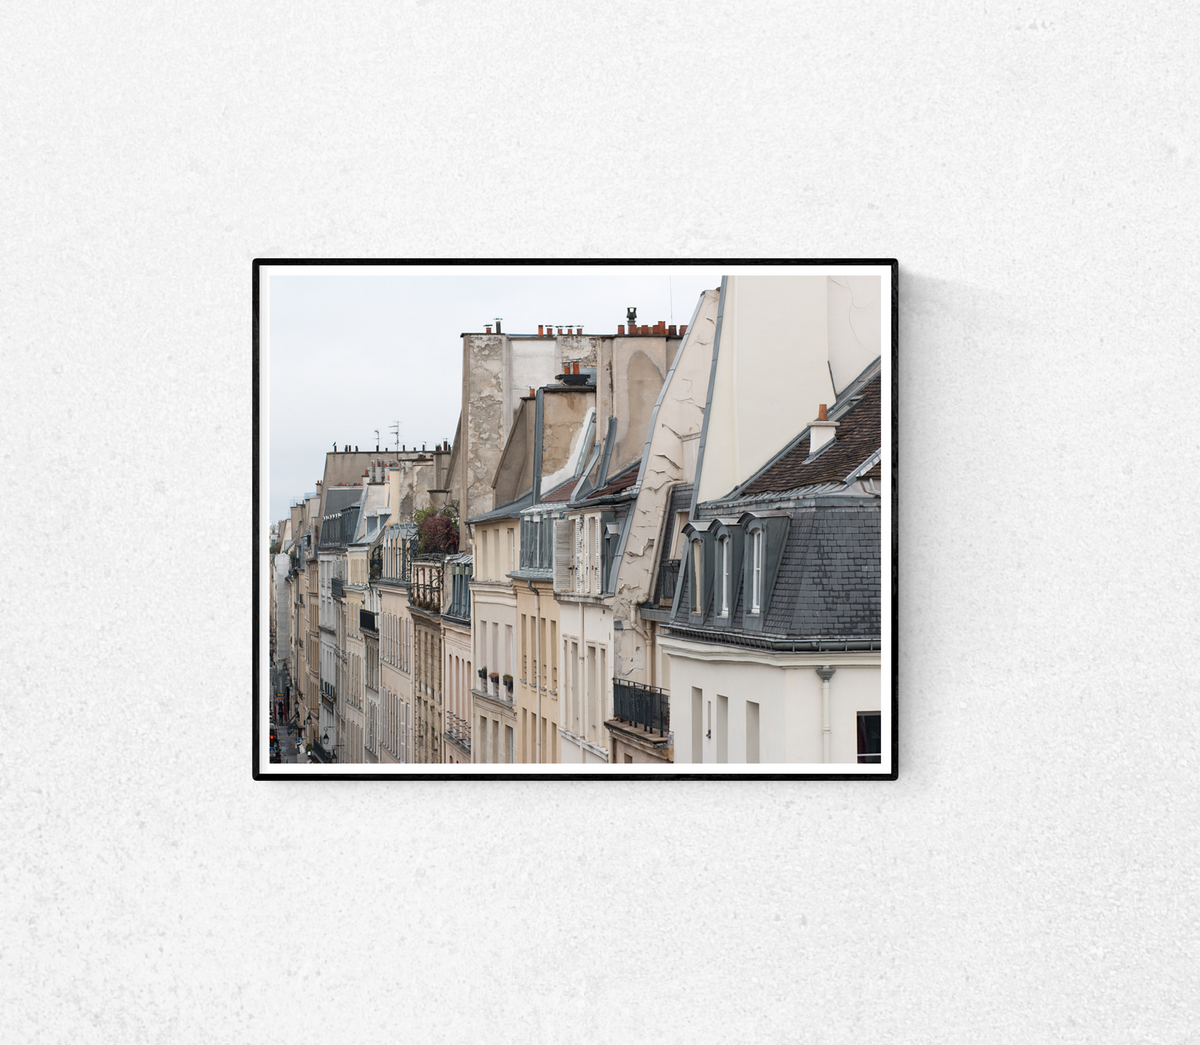 Parisian Rooftops St Germain des Prés - Every Day Paris 